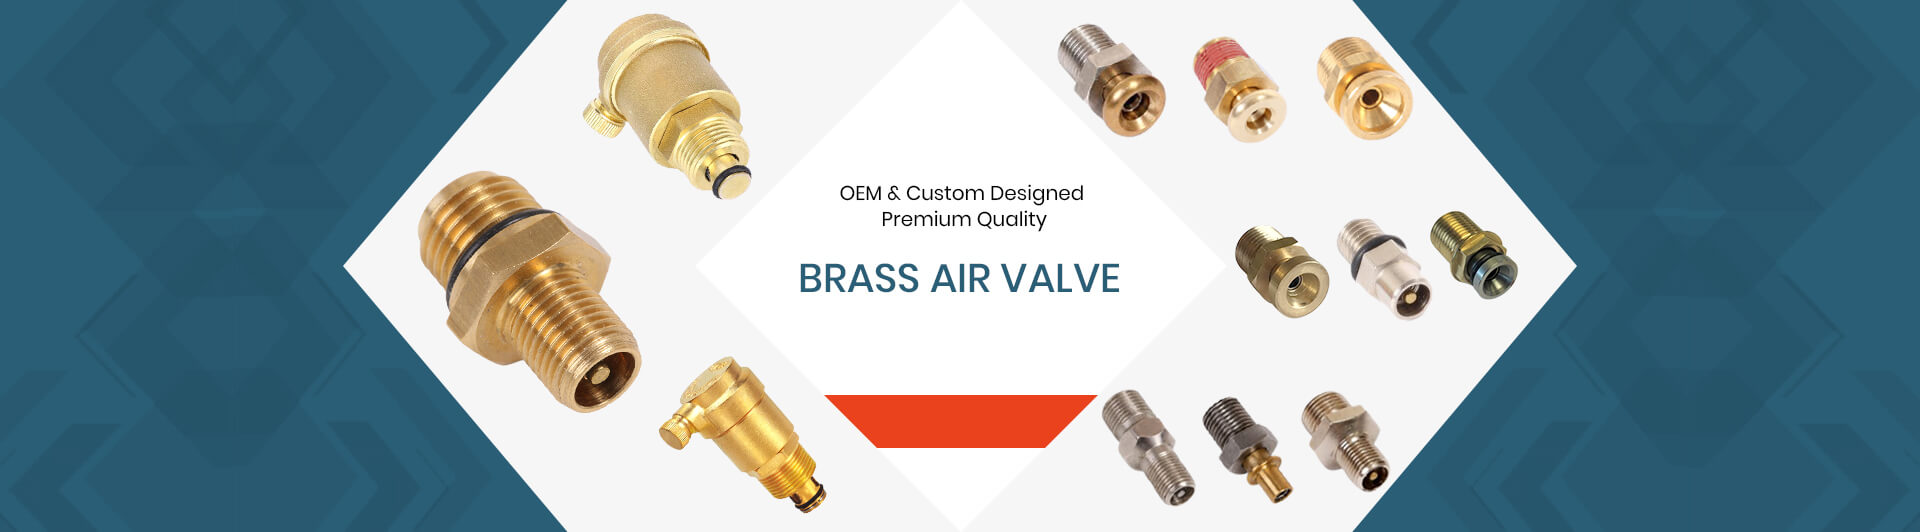 brass air valve manufacturer